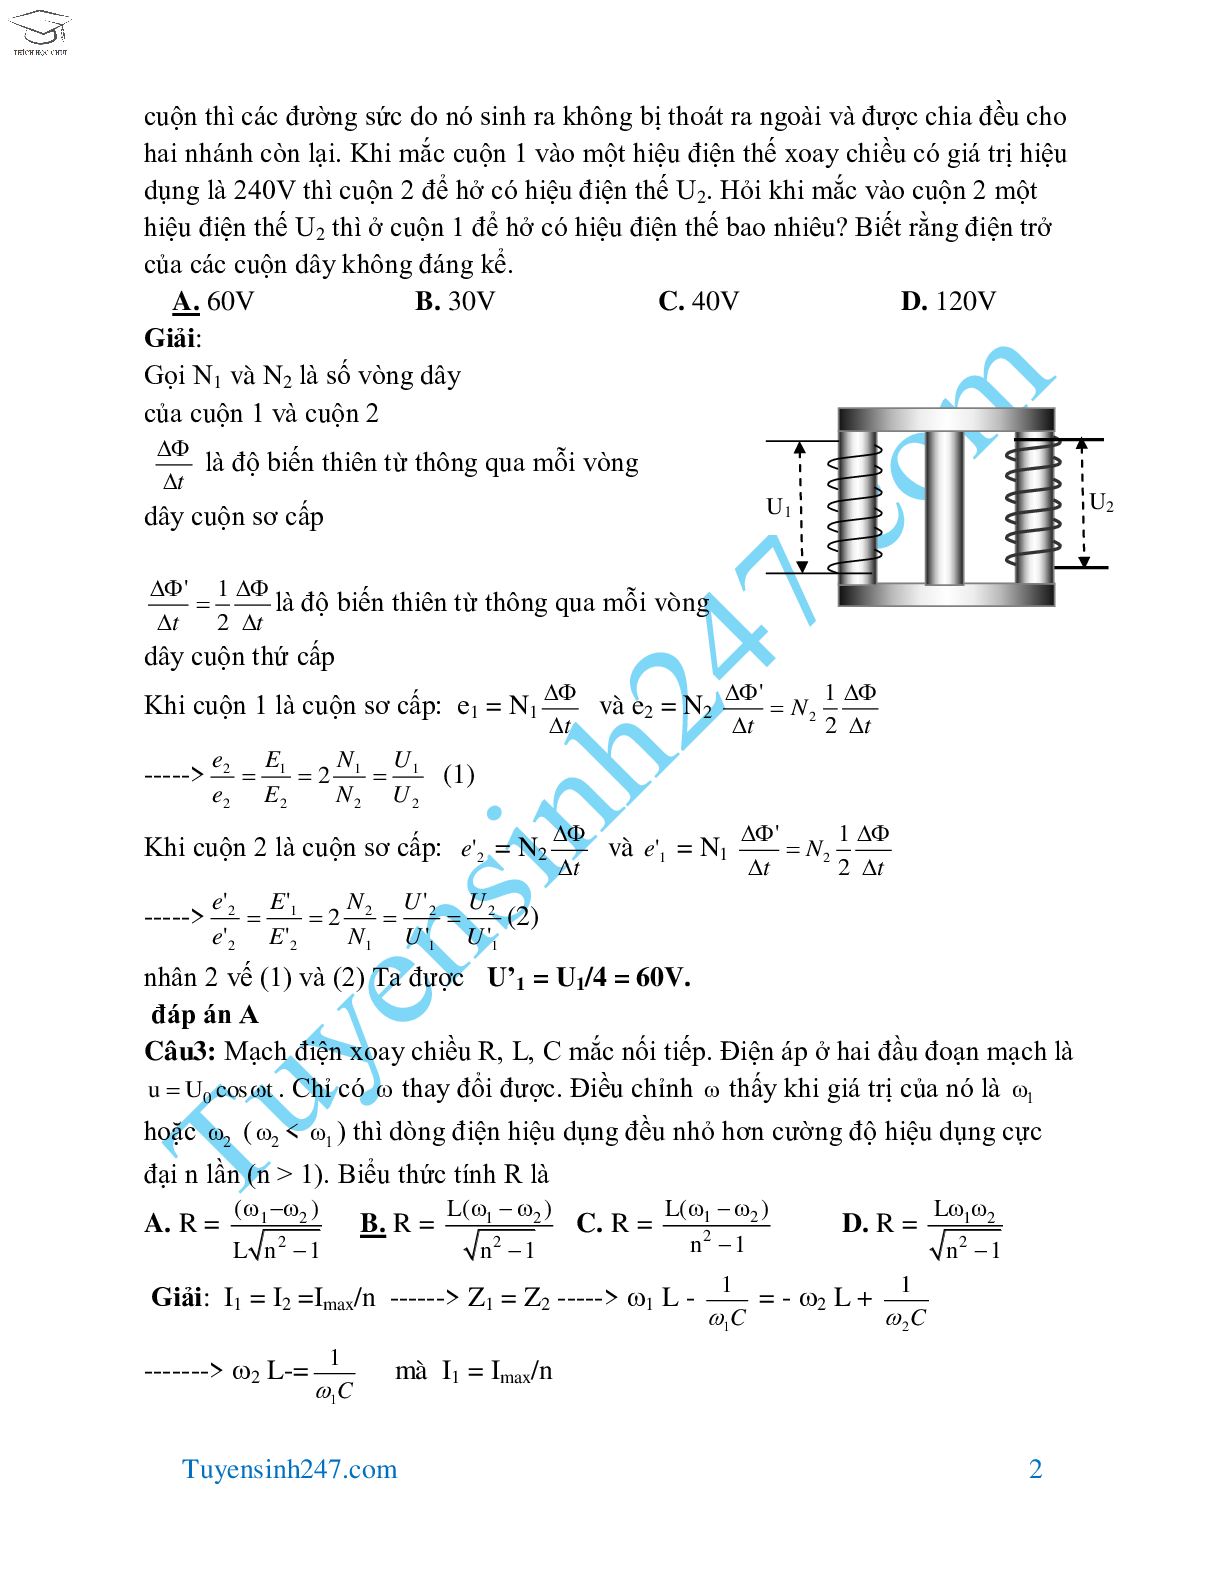 70 bài tập dòng điện xoay chiều hay và khó môn Vật Lý lớp 12 (trang 2)